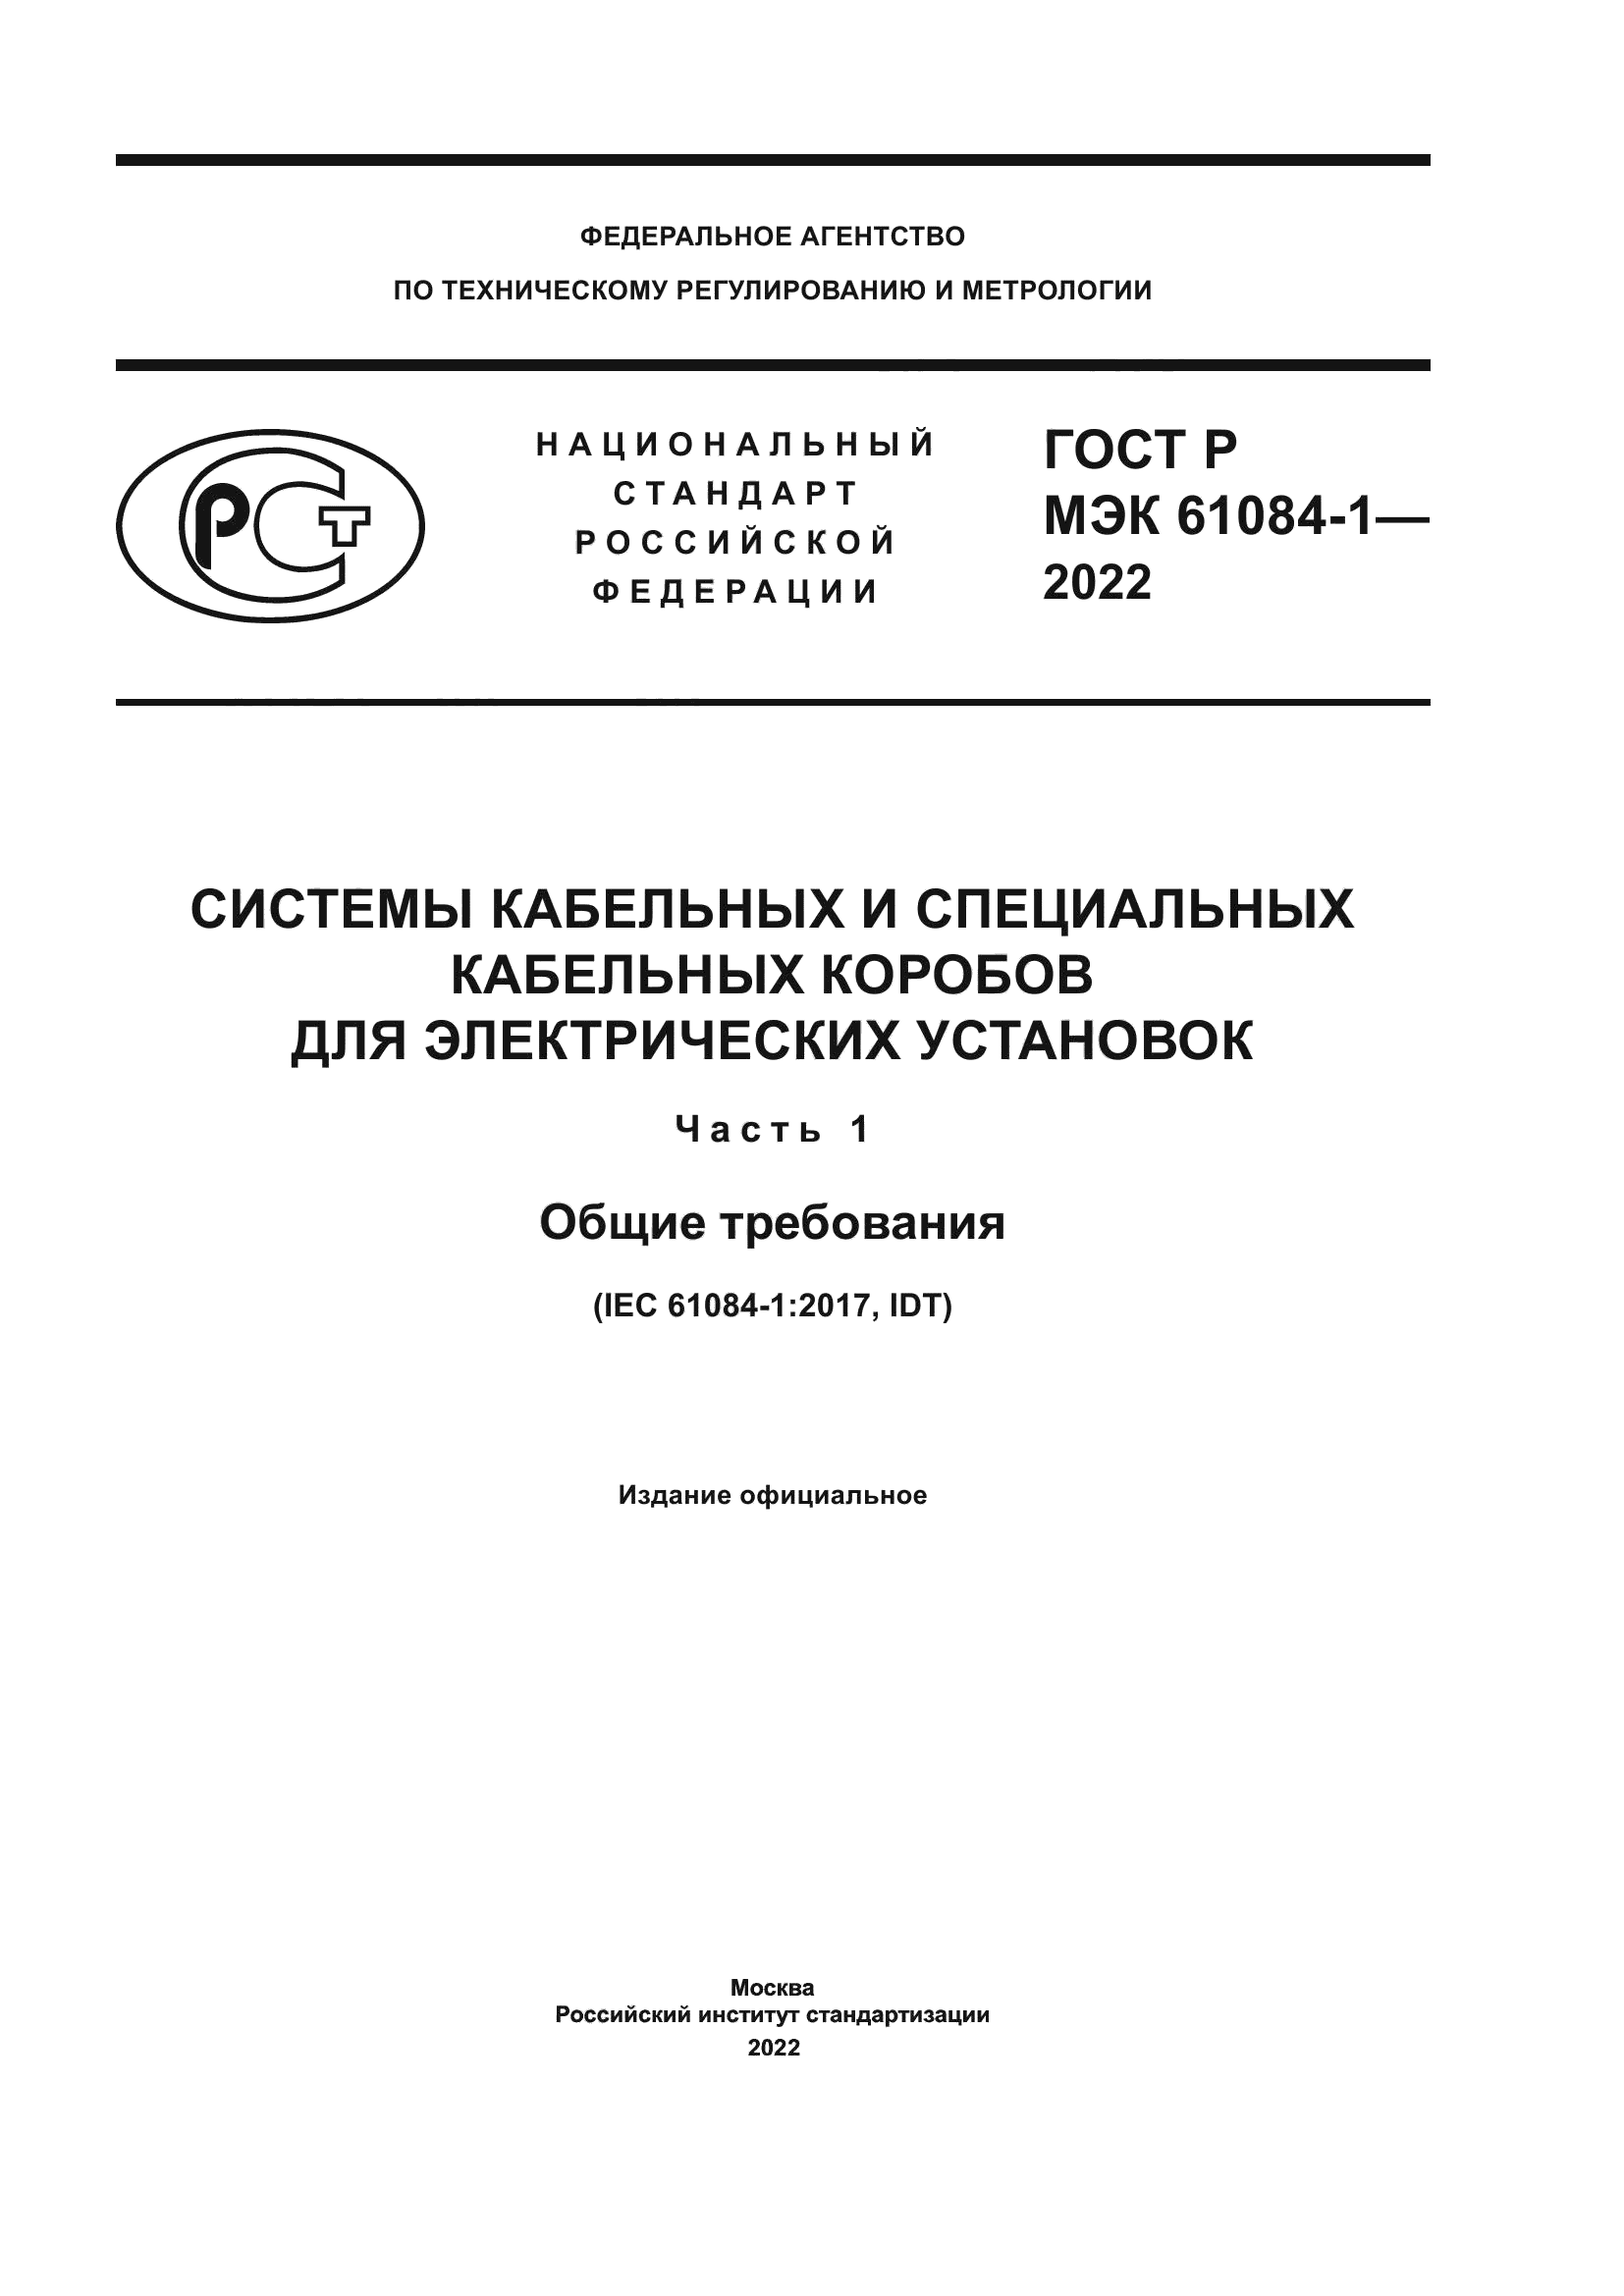 ГОСТ Р МЭК 61084-1-2022